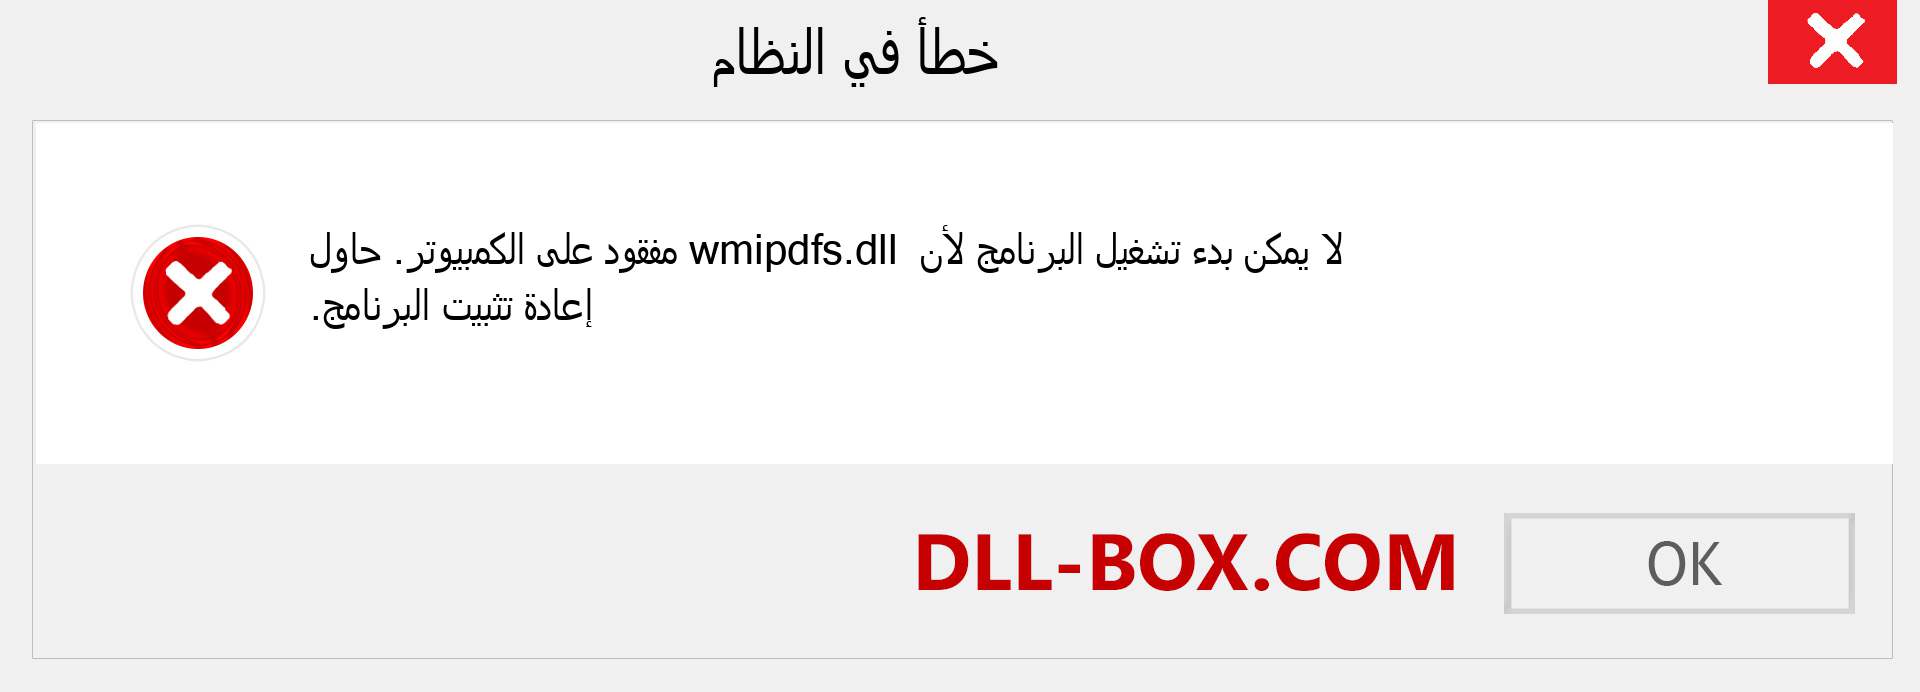 ملف wmipdfs.dll مفقود ؟. التنزيل لنظام التشغيل Windows 7 و 8 و 10 - إصلاح خطأ wmipdfs dll المفقود على Windows والصور والصور